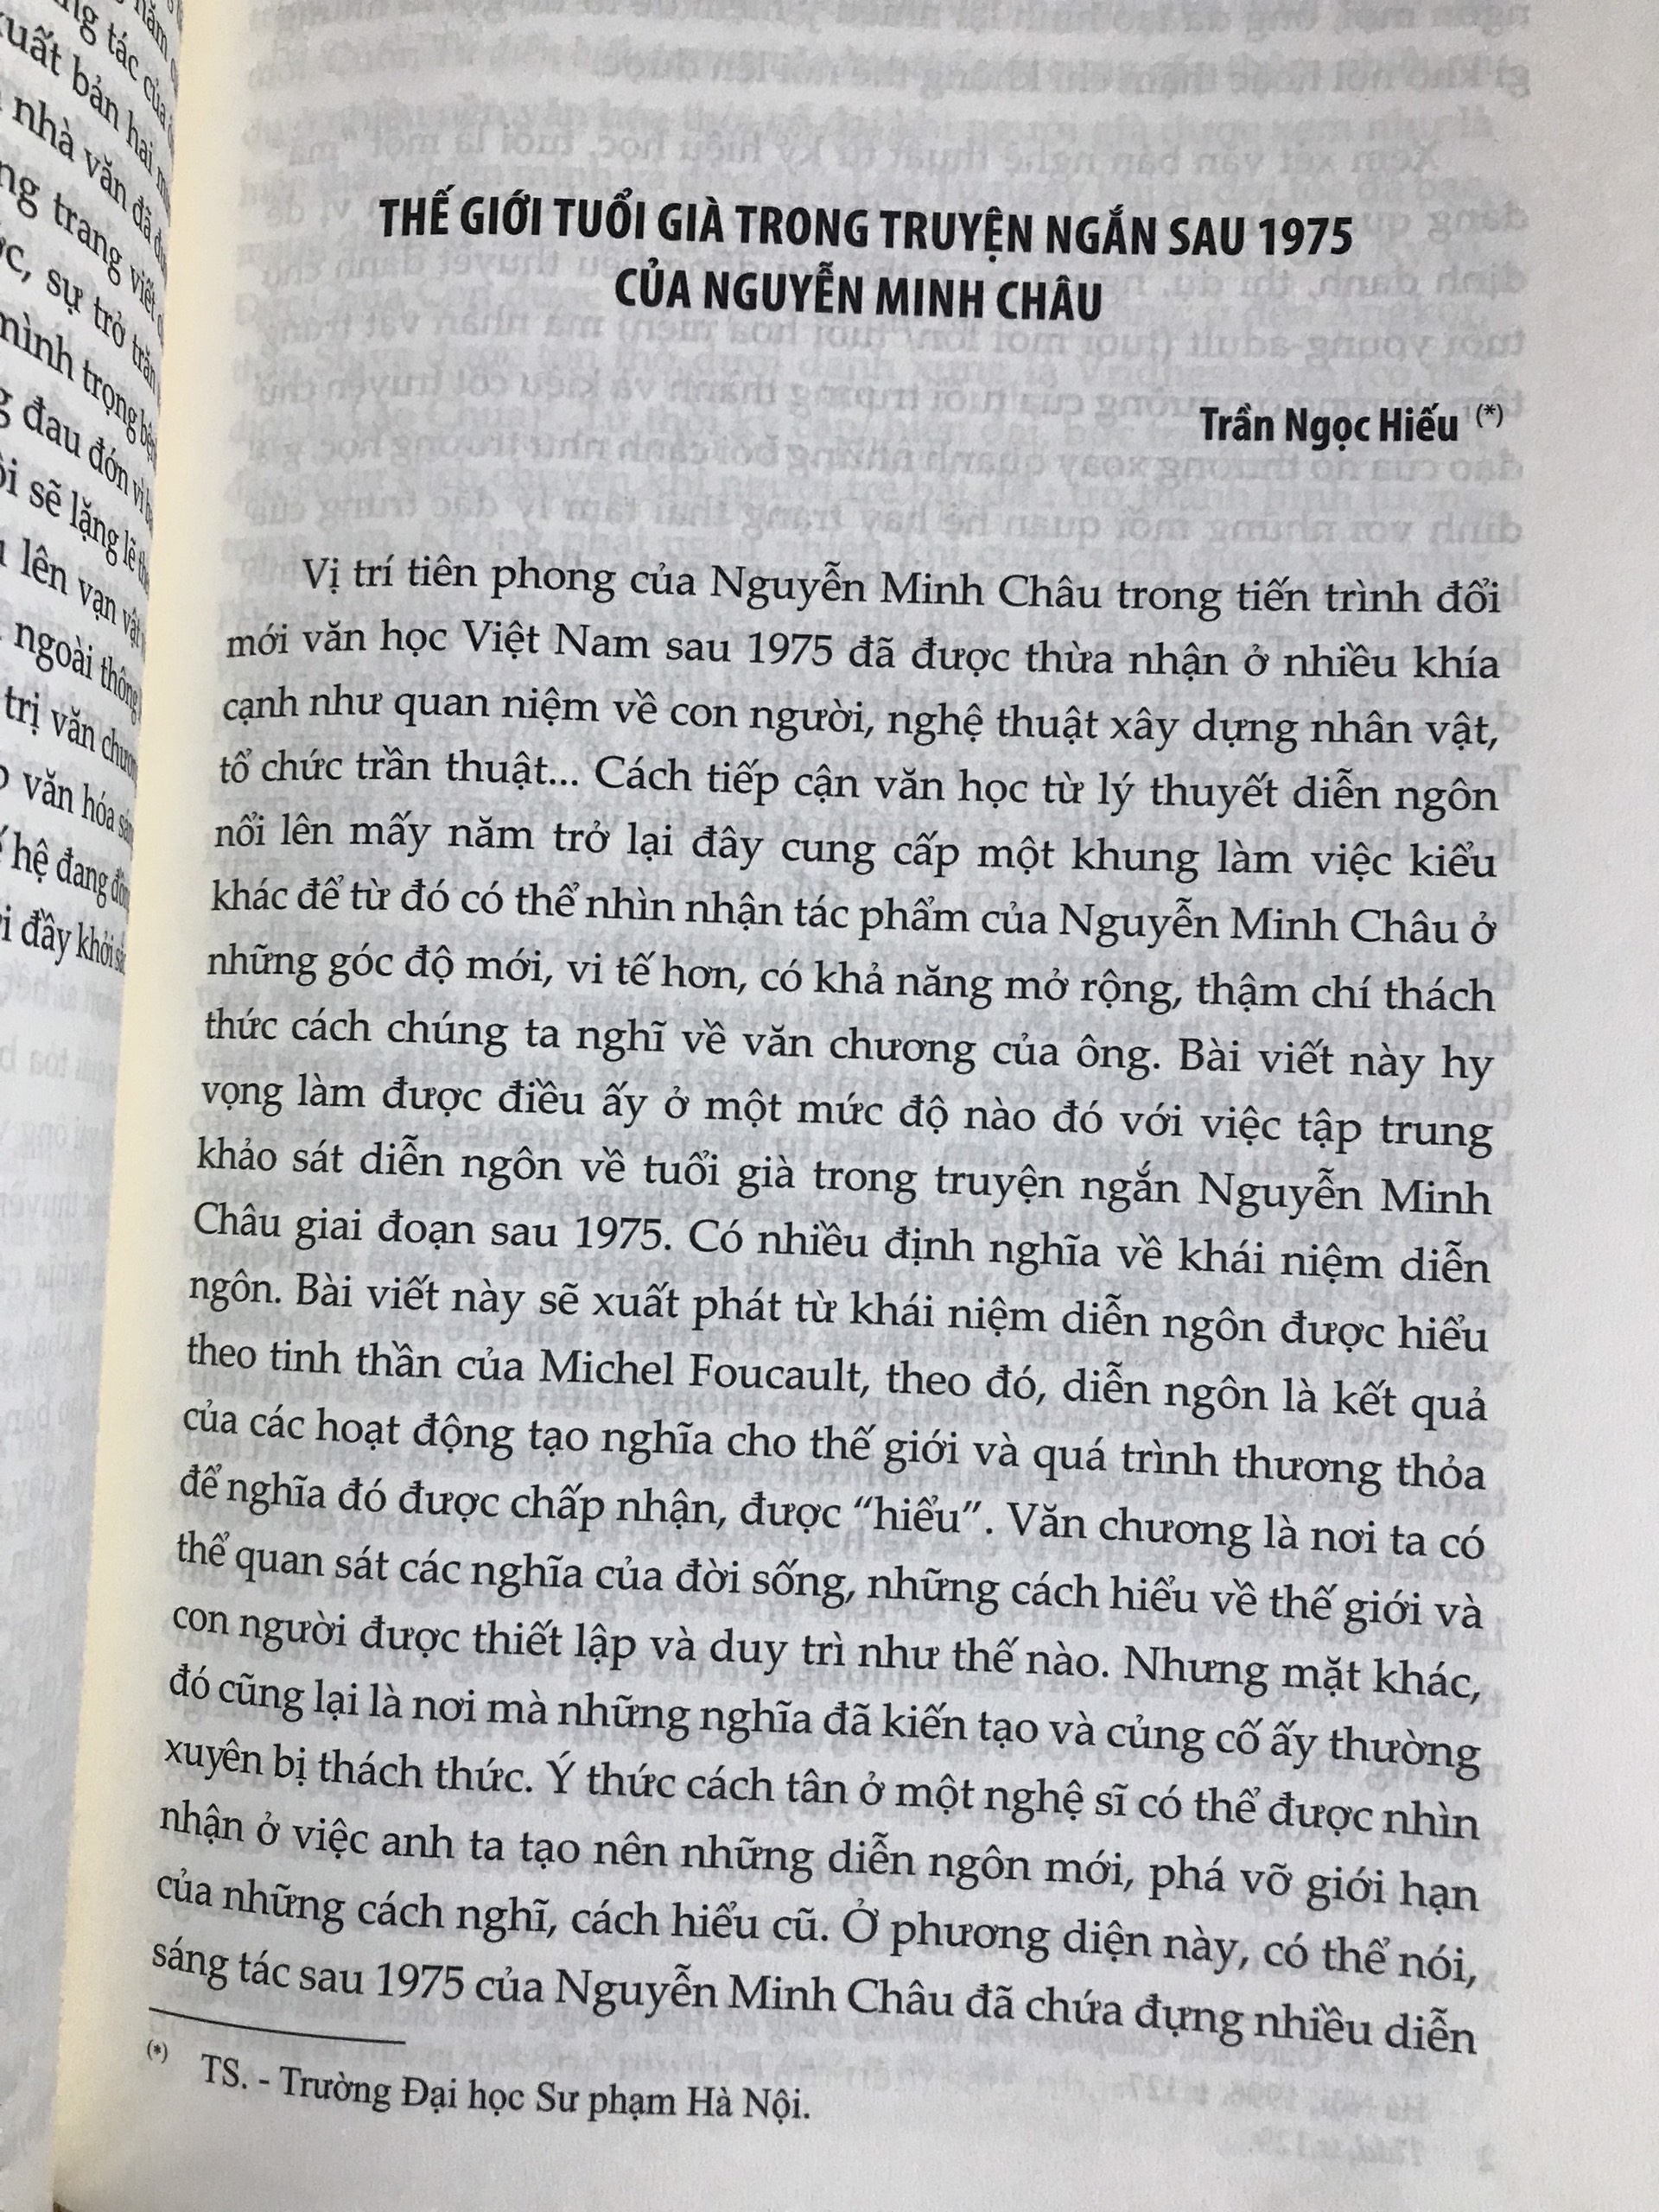 Nguyễn Minh Châu: Dấu chân mở đường - Trong tiến trình đổi mới văn học Việt Nam